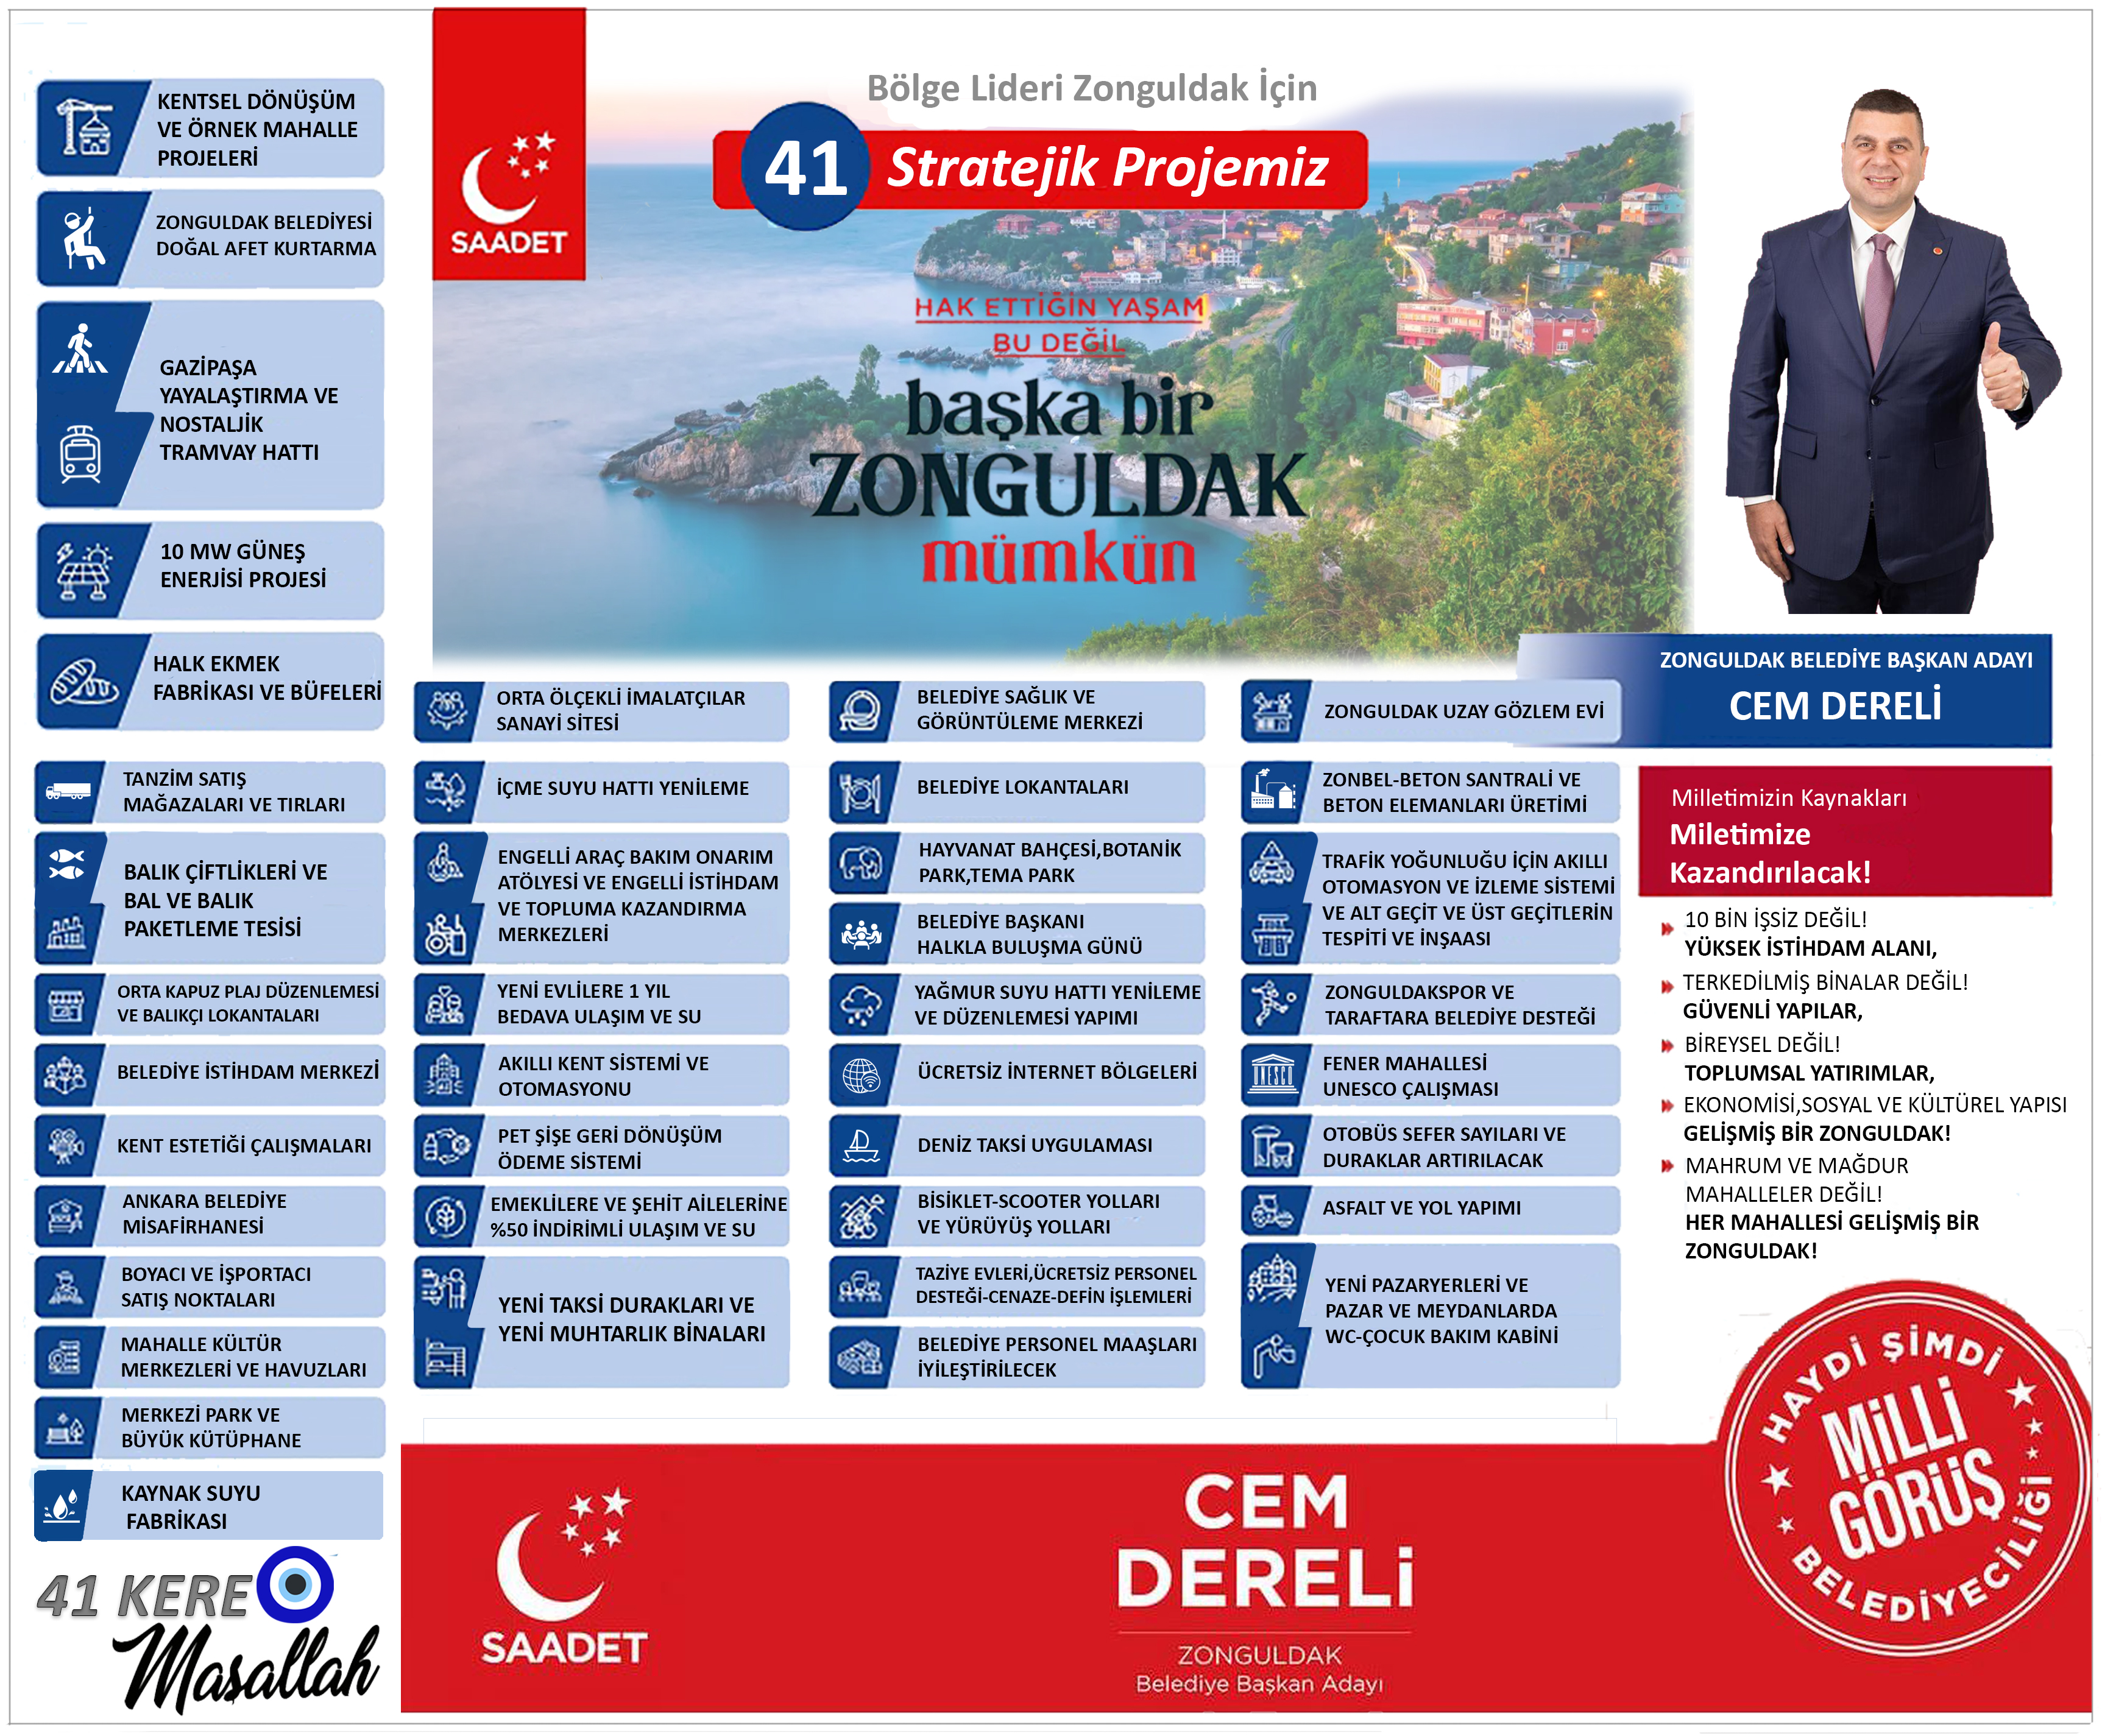 Cem Dereli̇ Saadet Zonguldak Vaatleri̇